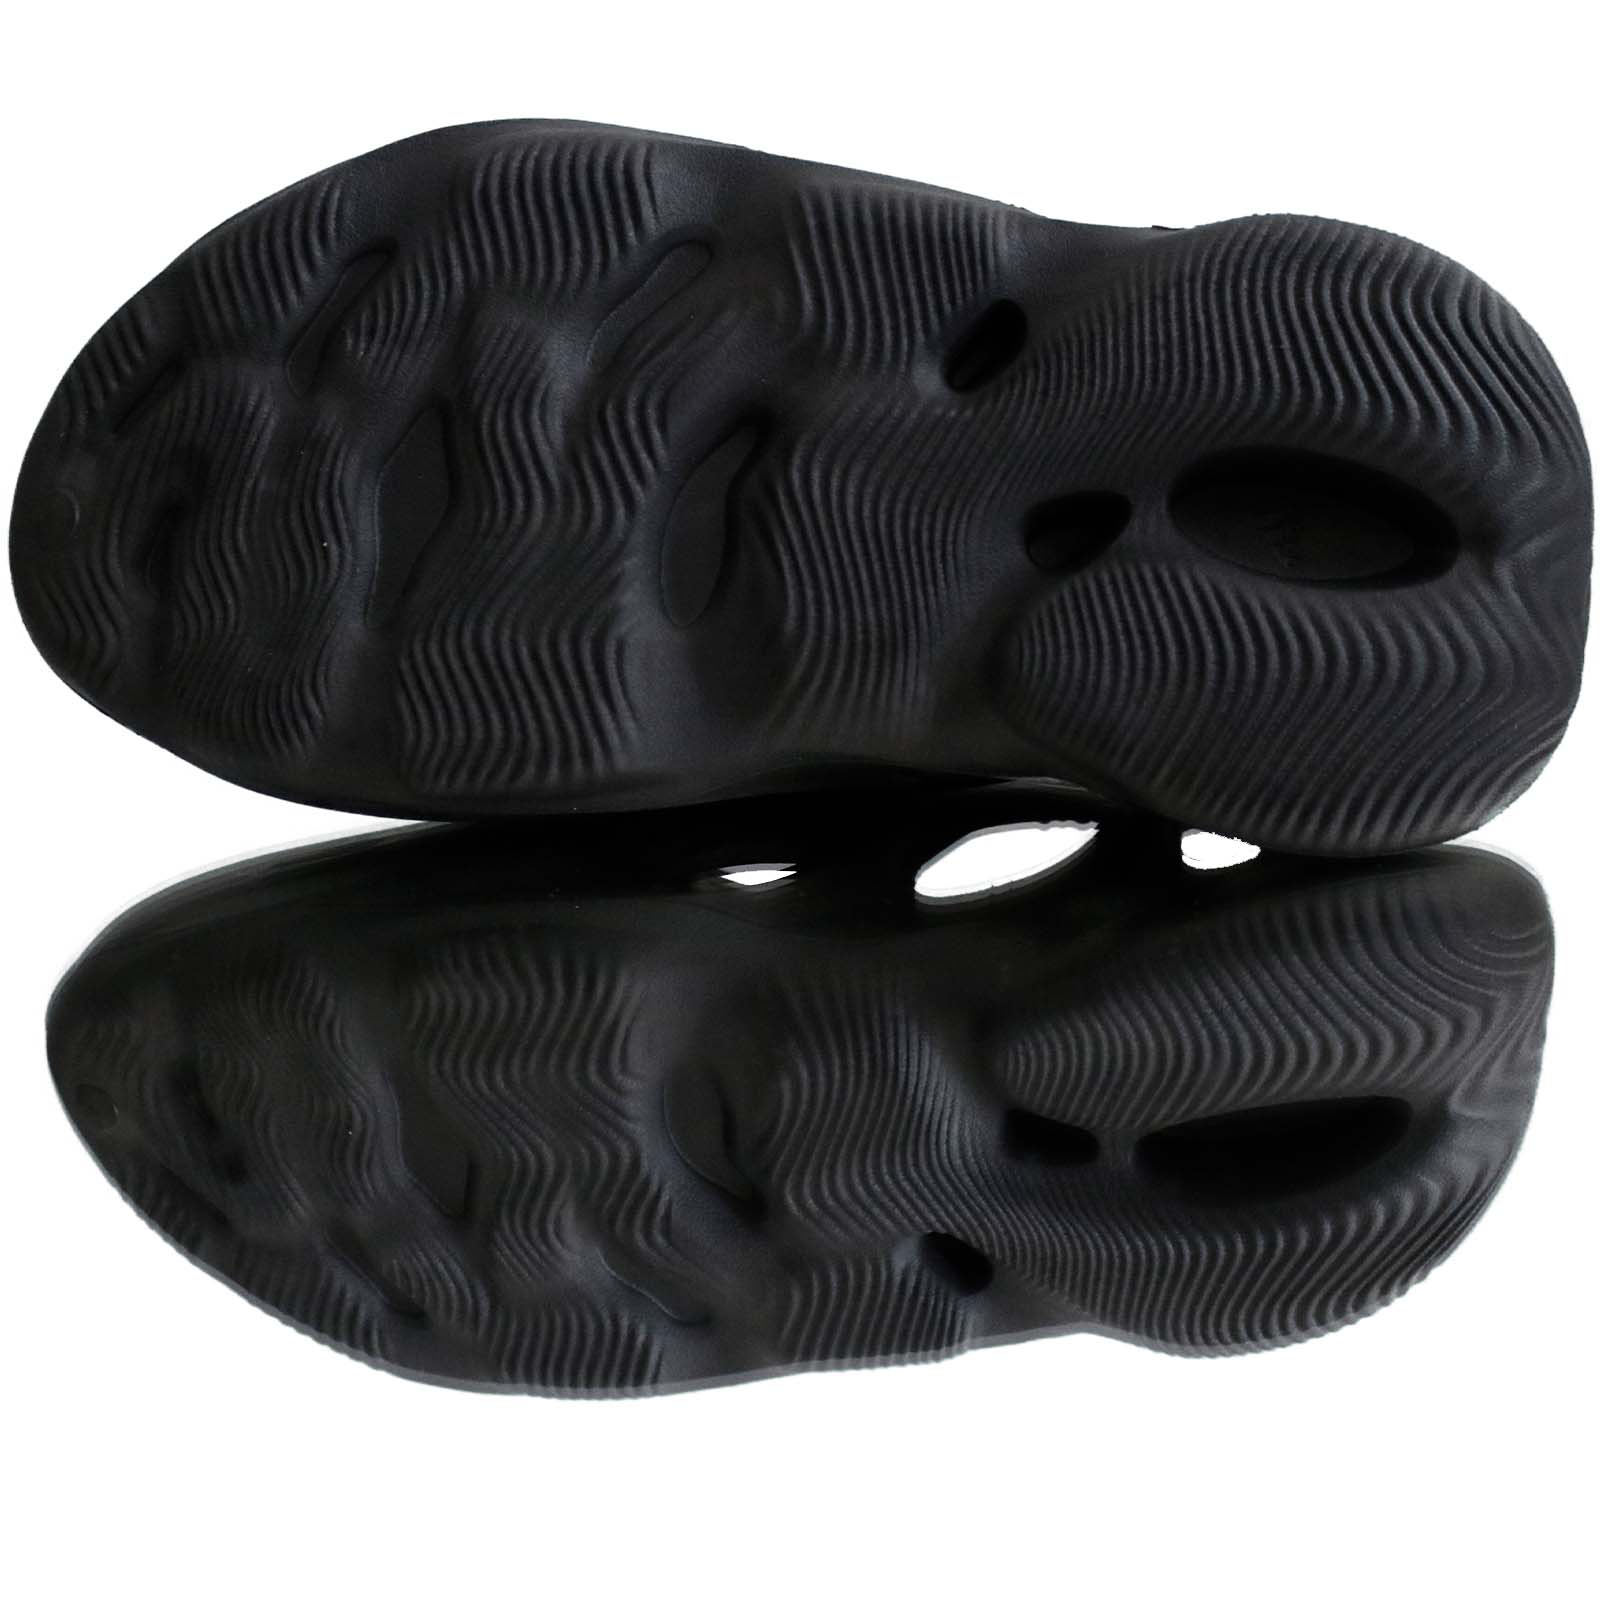 Yeezy Foam Runner Onyx  Adidas   